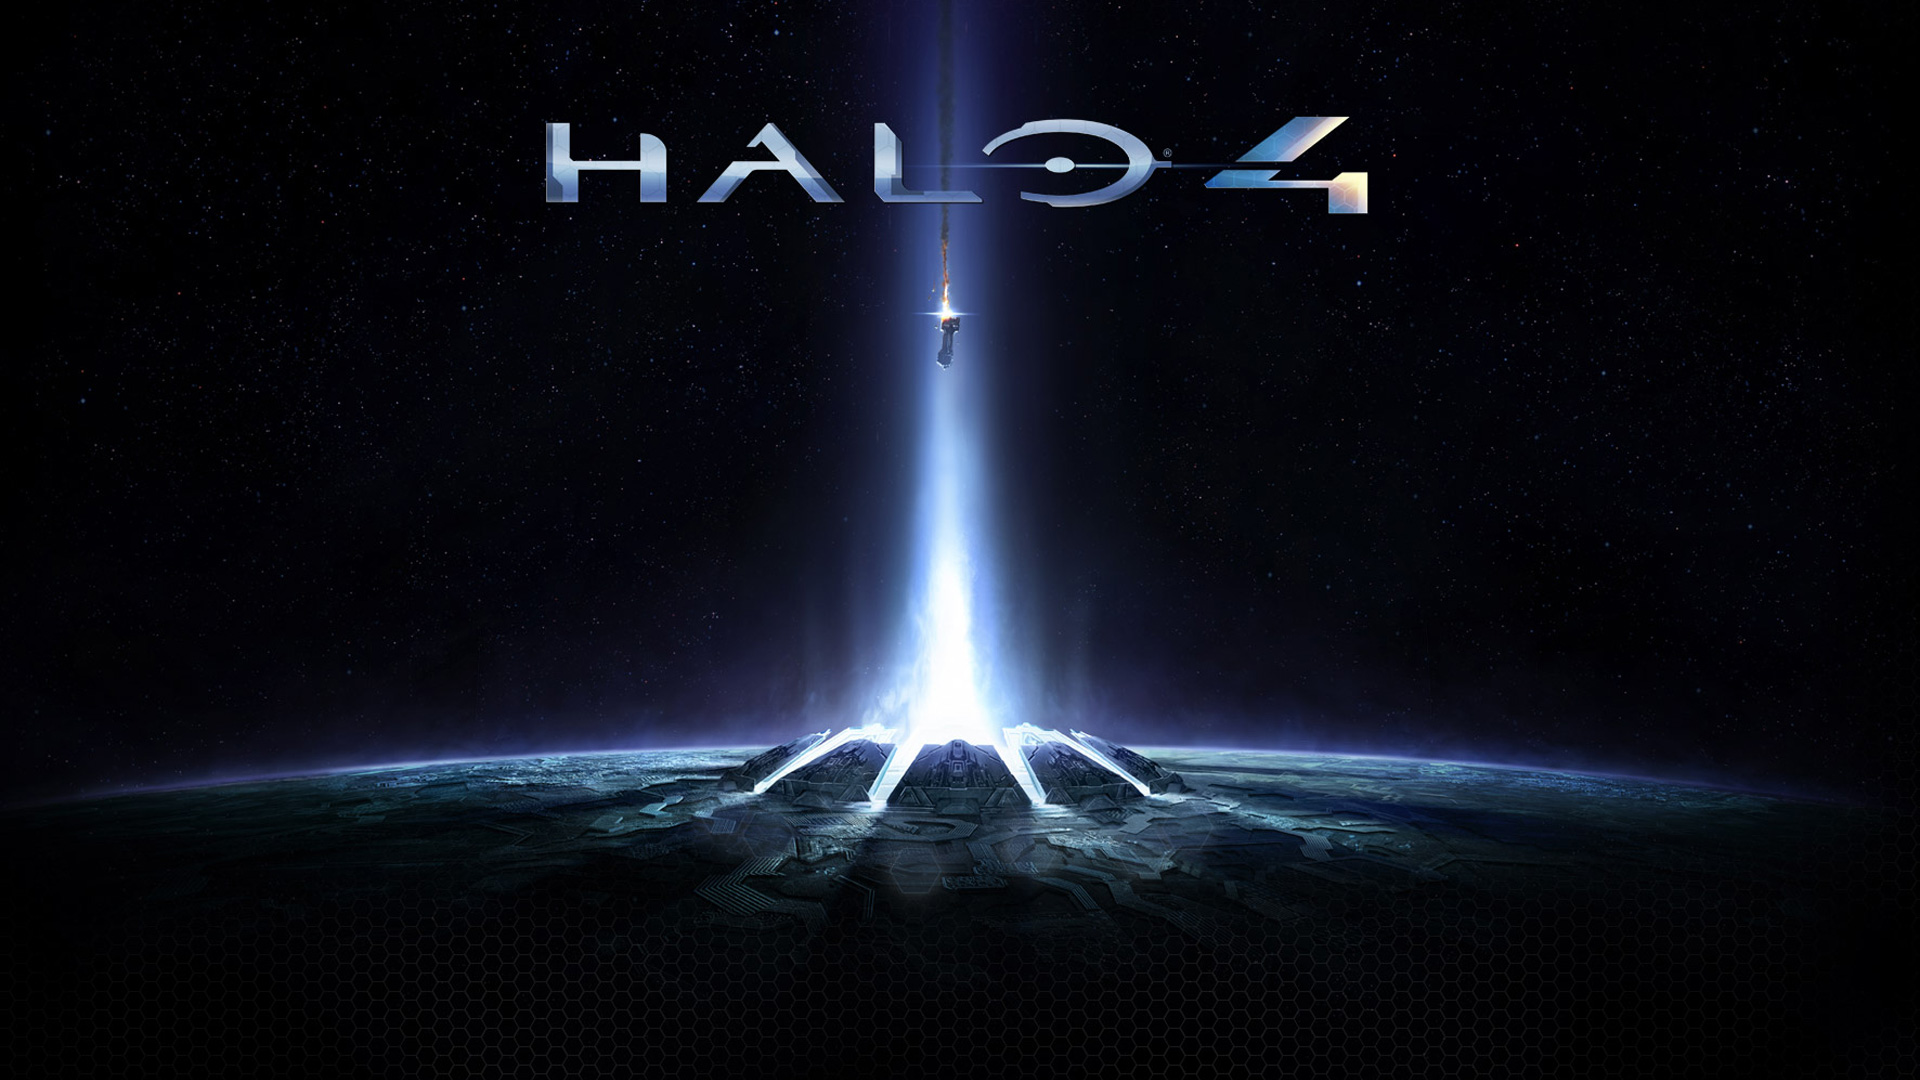 1x1.trans دانلود تم Halo 4 برای Xbox 360